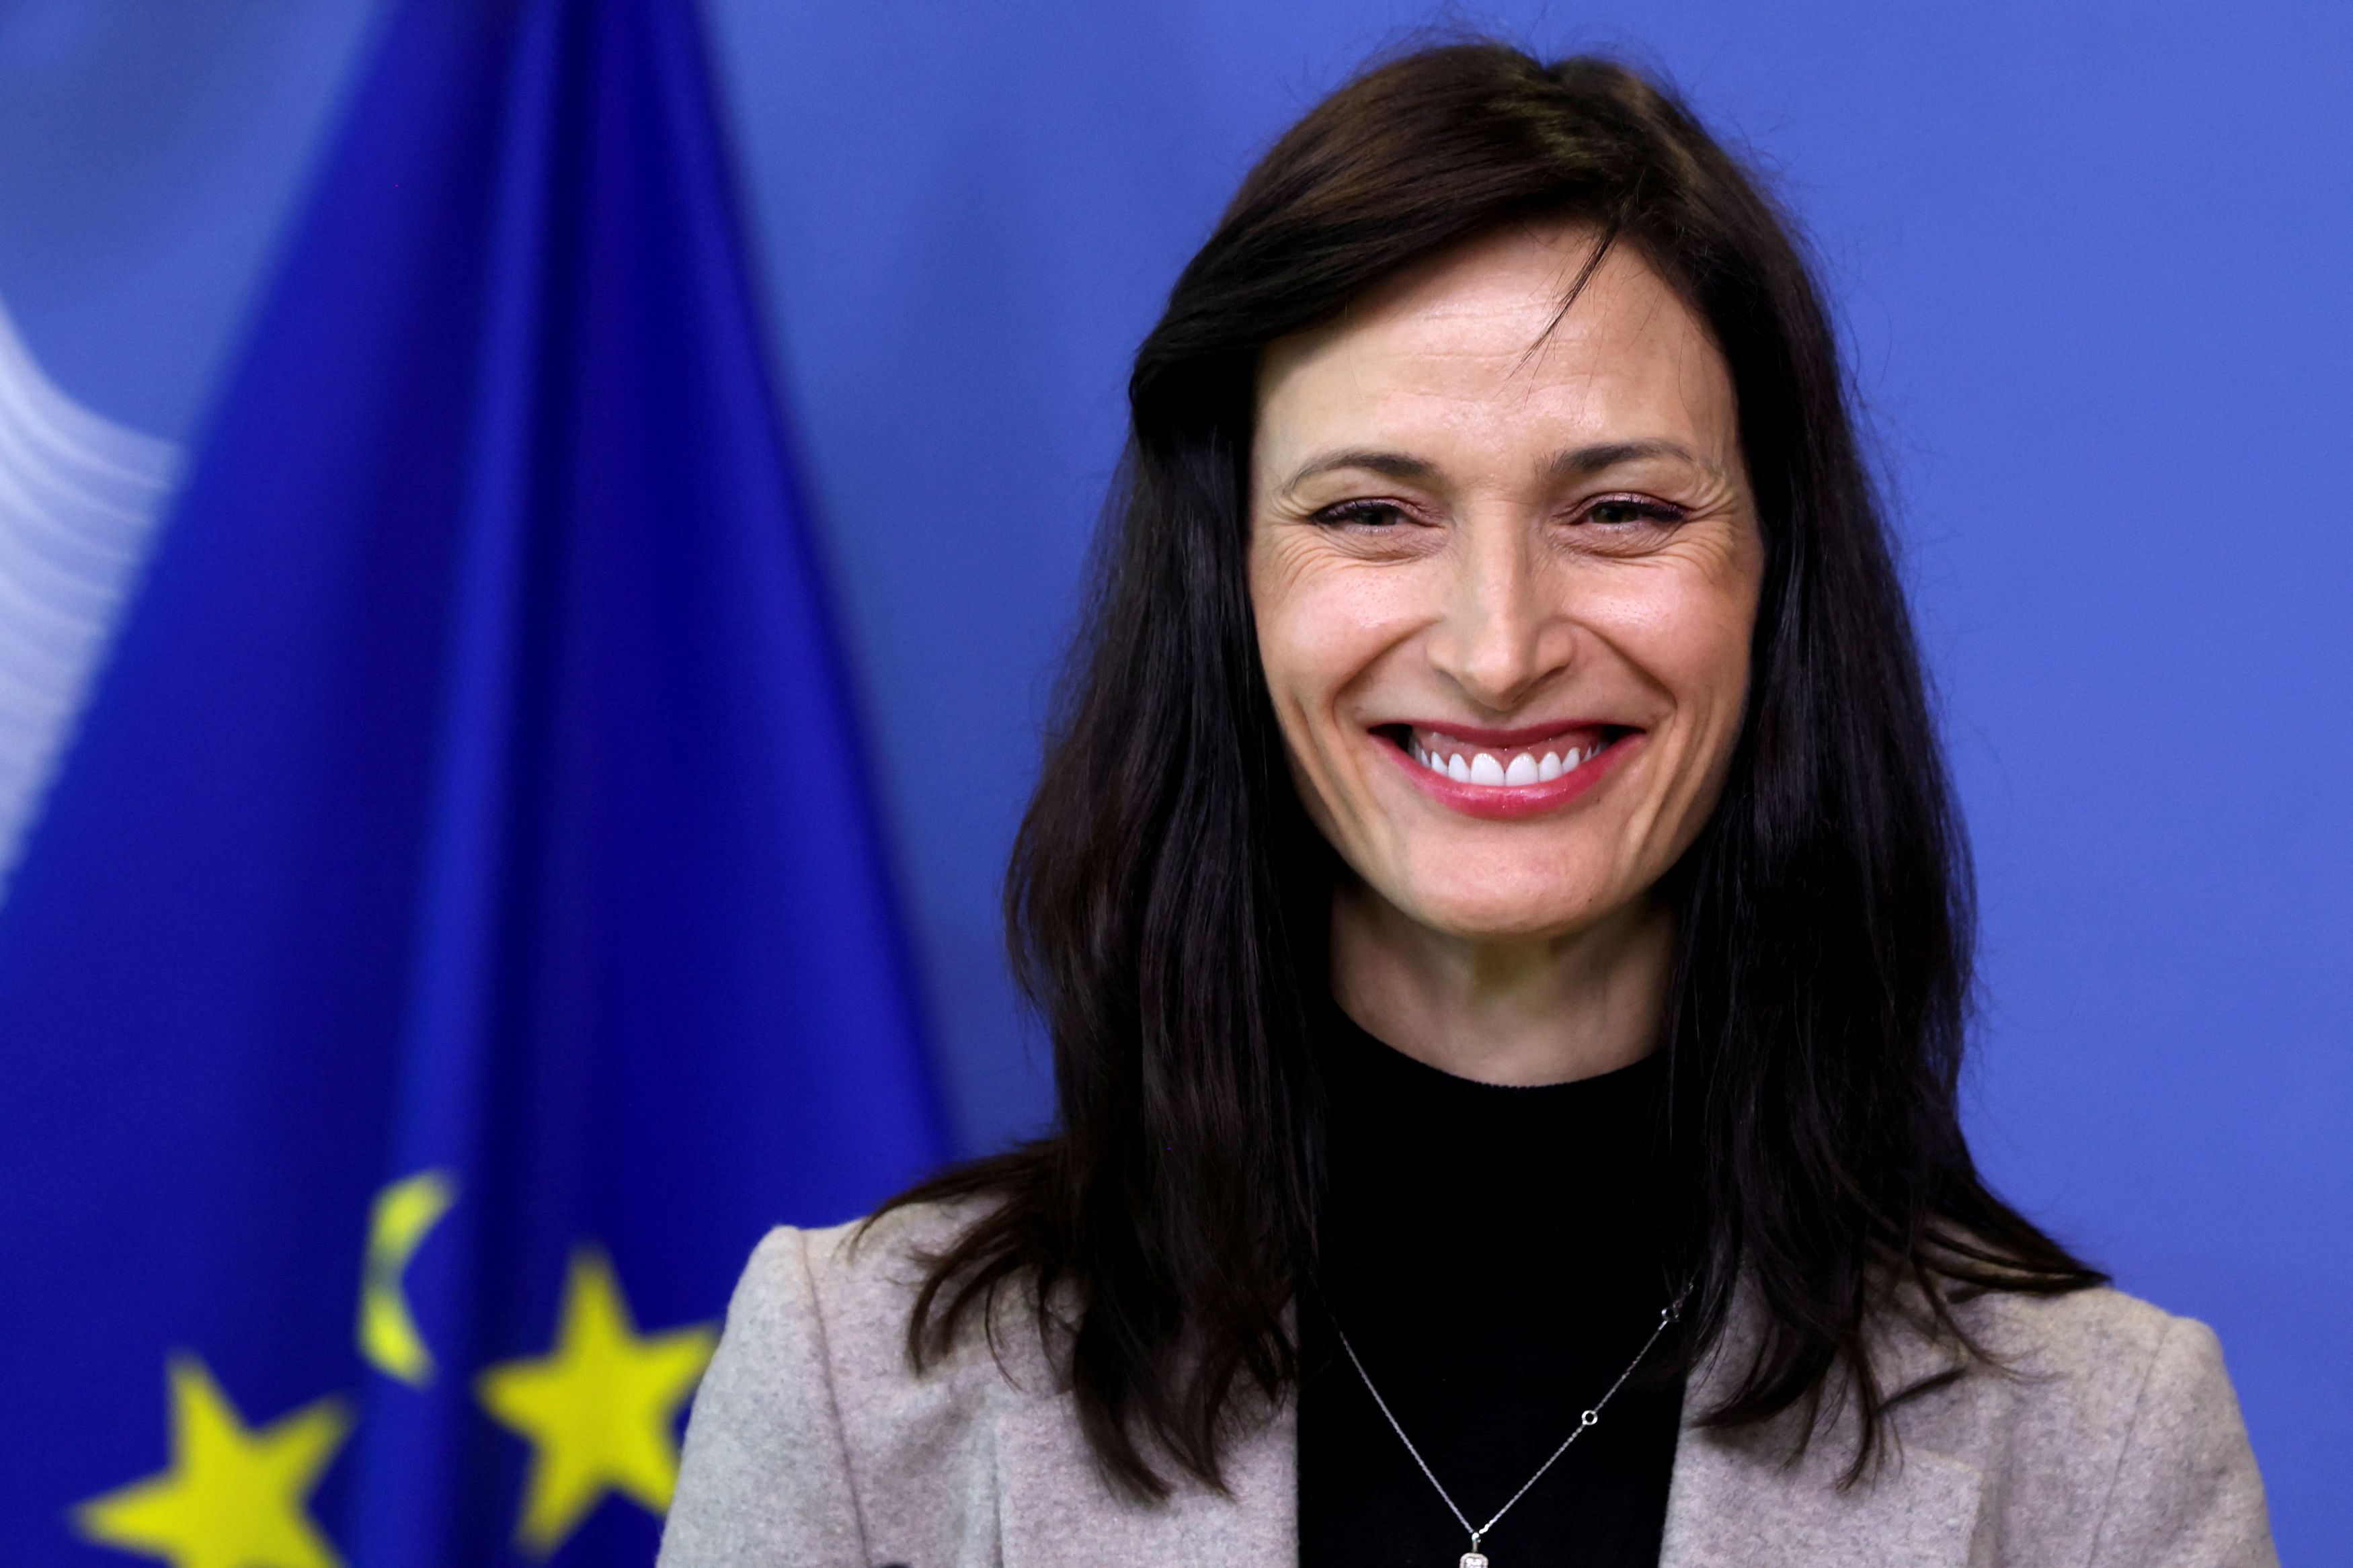 Μαρίγια Γκαμπριέλ: Η Επίτροπος της Ε.Ε. παραιτήθηκε – Αναλαμβάνει το σχηματισμό κυβέρνησης στη Βουλγαρία